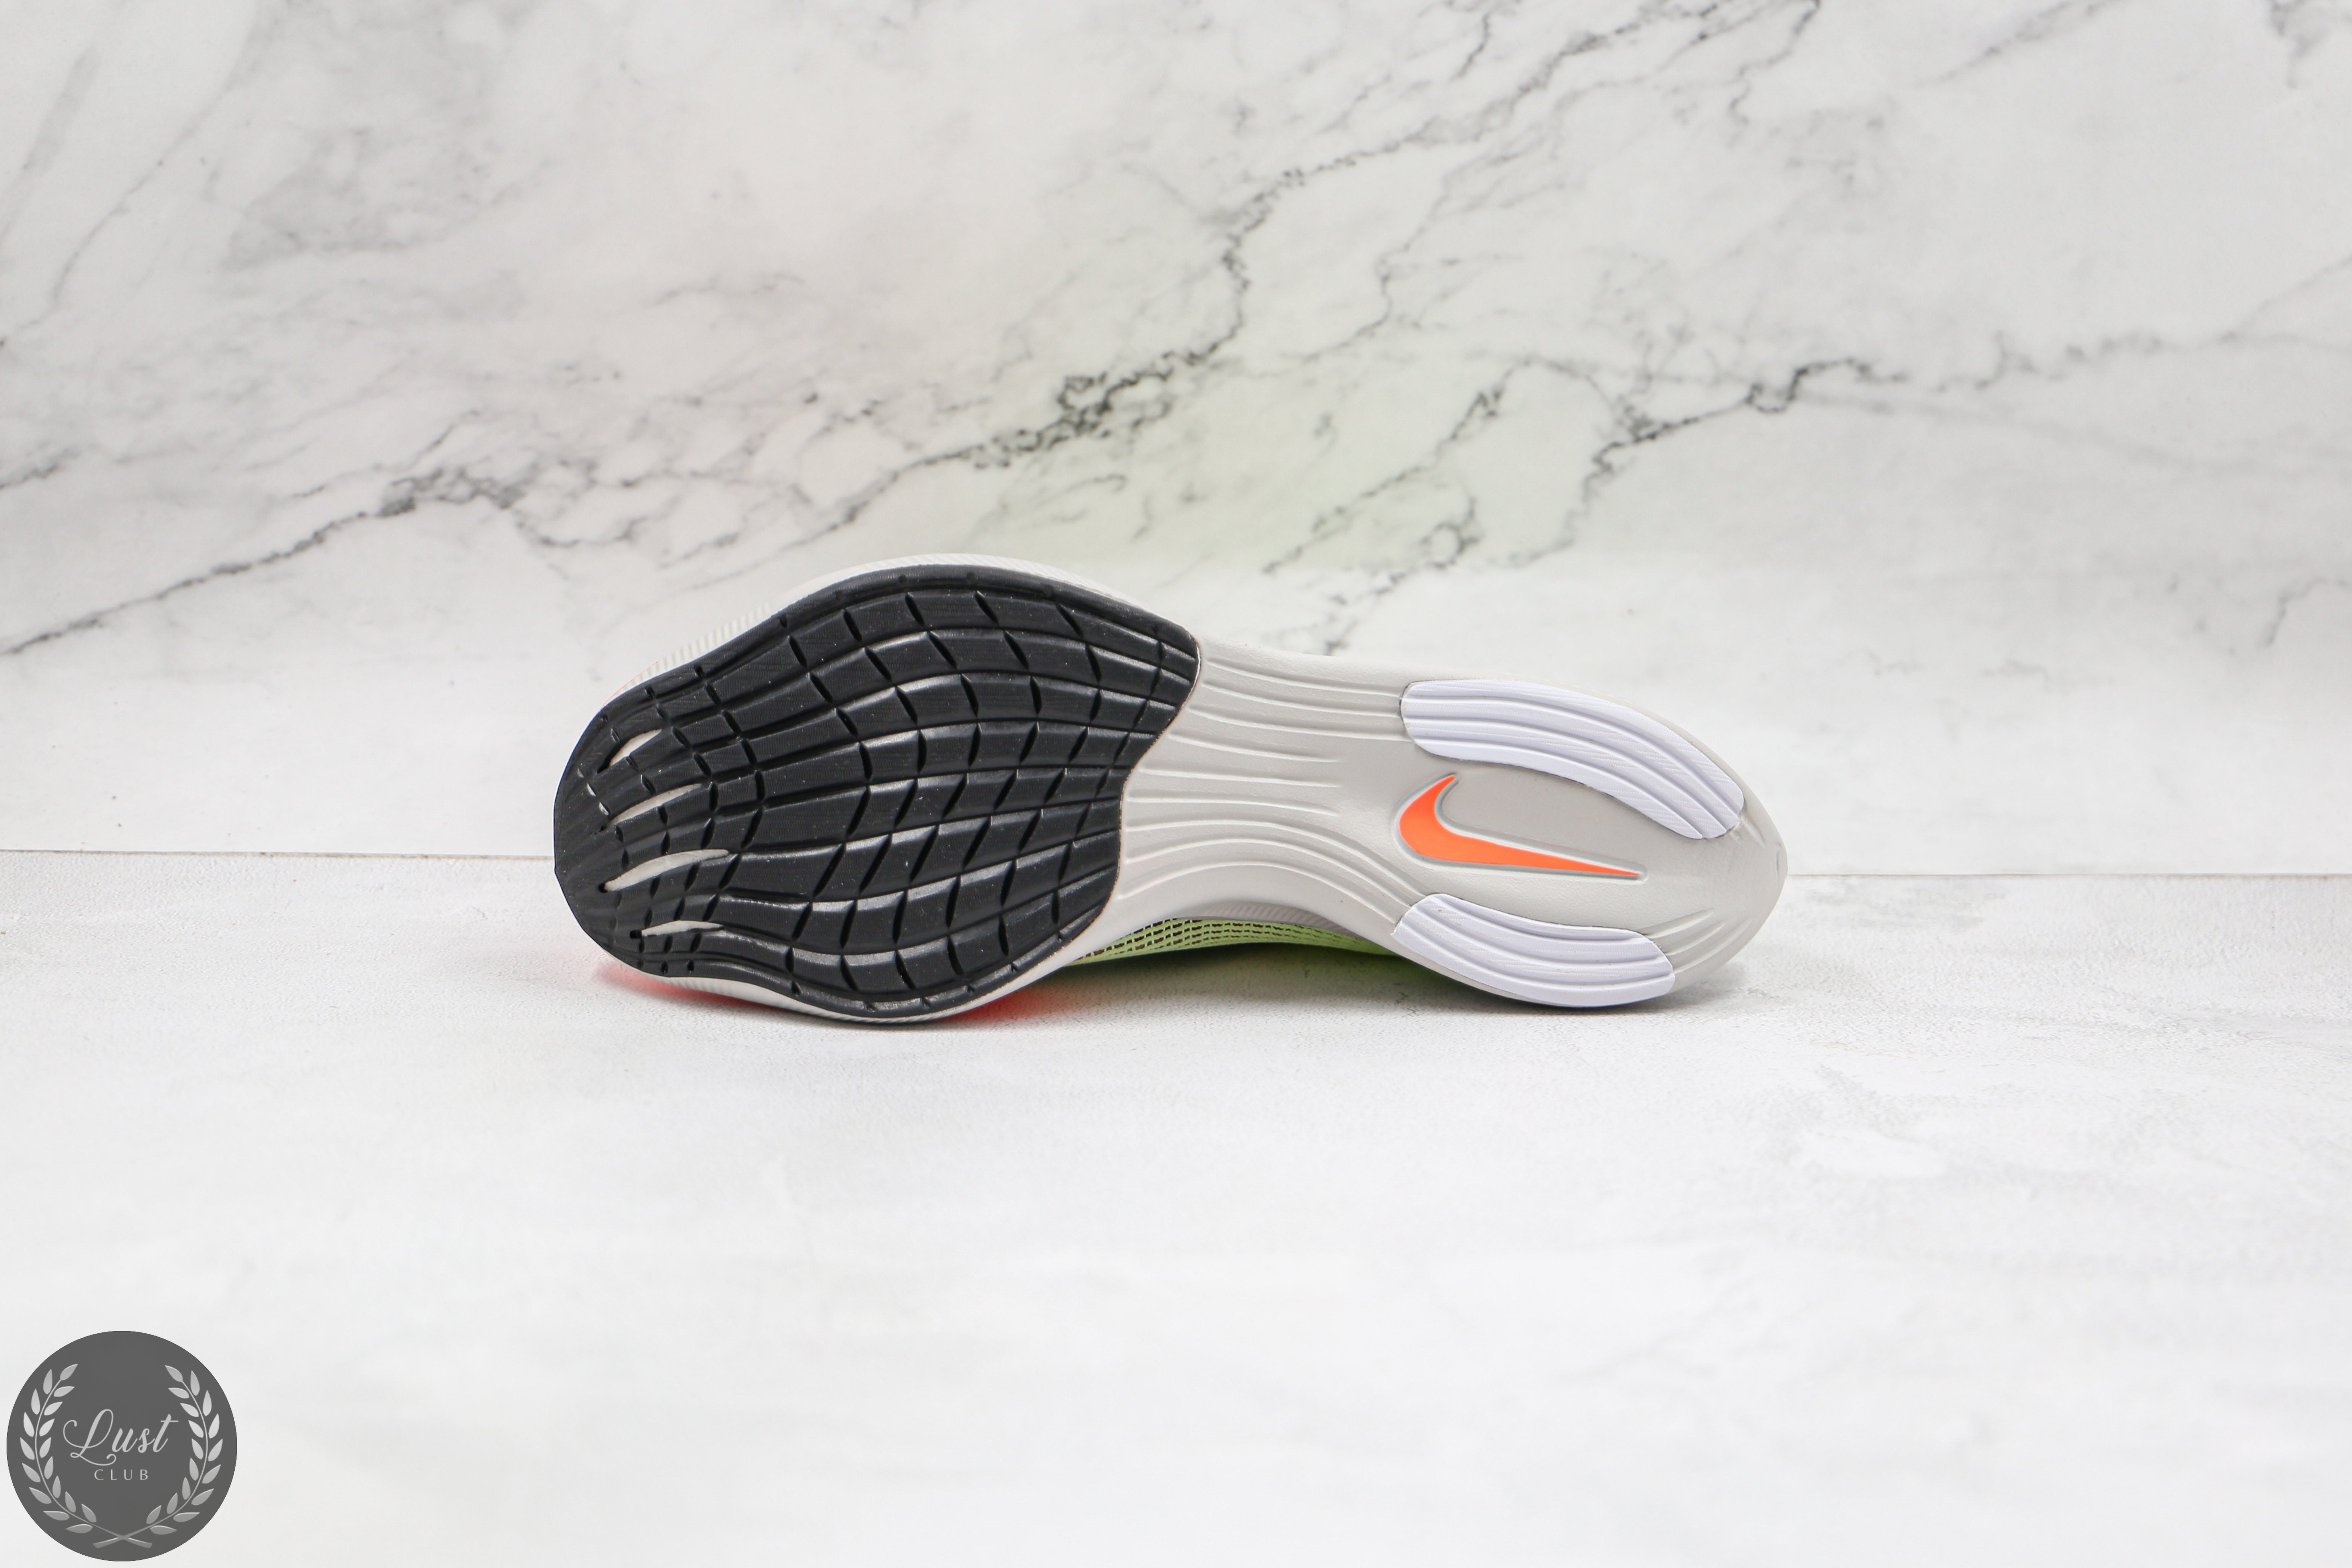 Nike Zoom X Vaporfly Next% 2 Barely Volt Hyper Orange